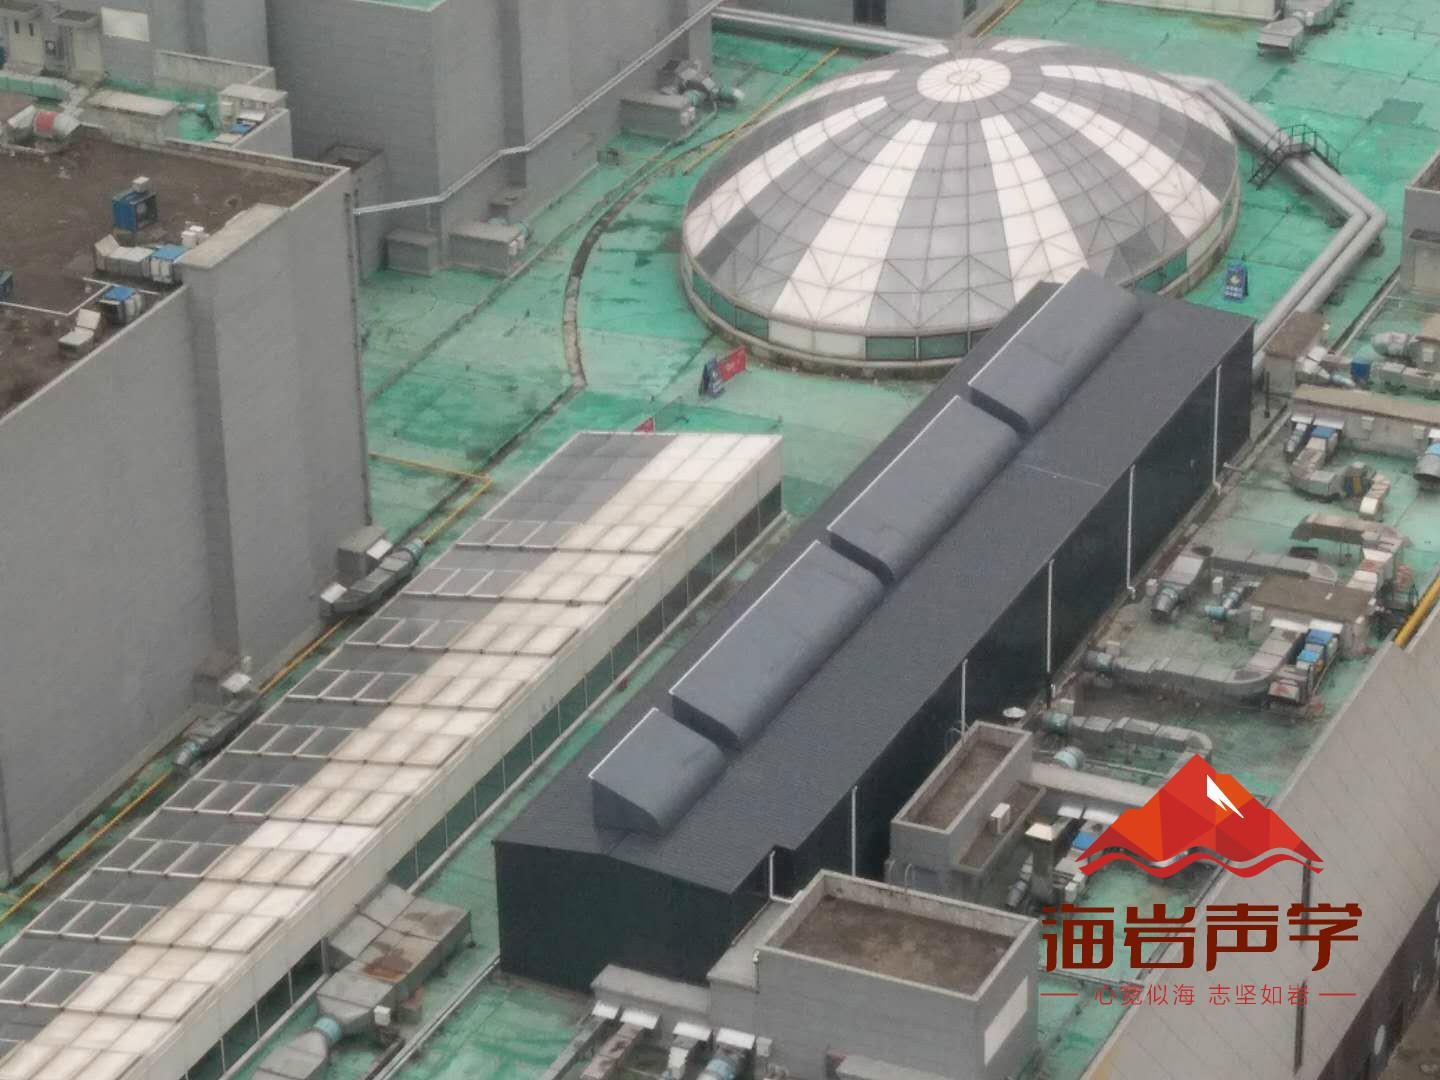 渭南工业降噪 四川海岩声学科技有限公司